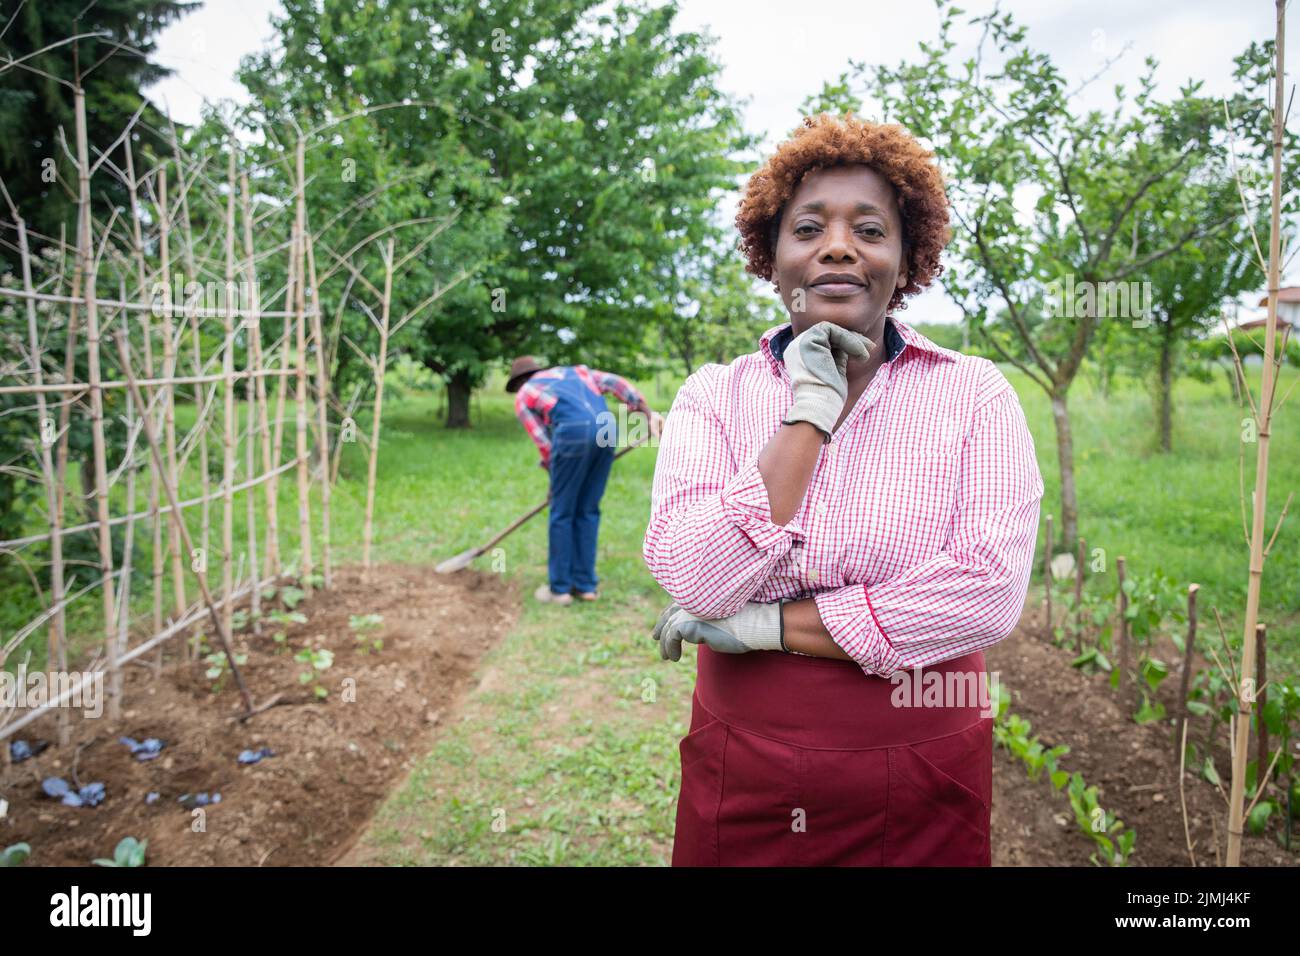 Porträt einer bäuerlichen Frau auf ihrem kultivierten Feld gräbt ihr Mann die Erde, ein Kleinunternehmer. Stockfoto